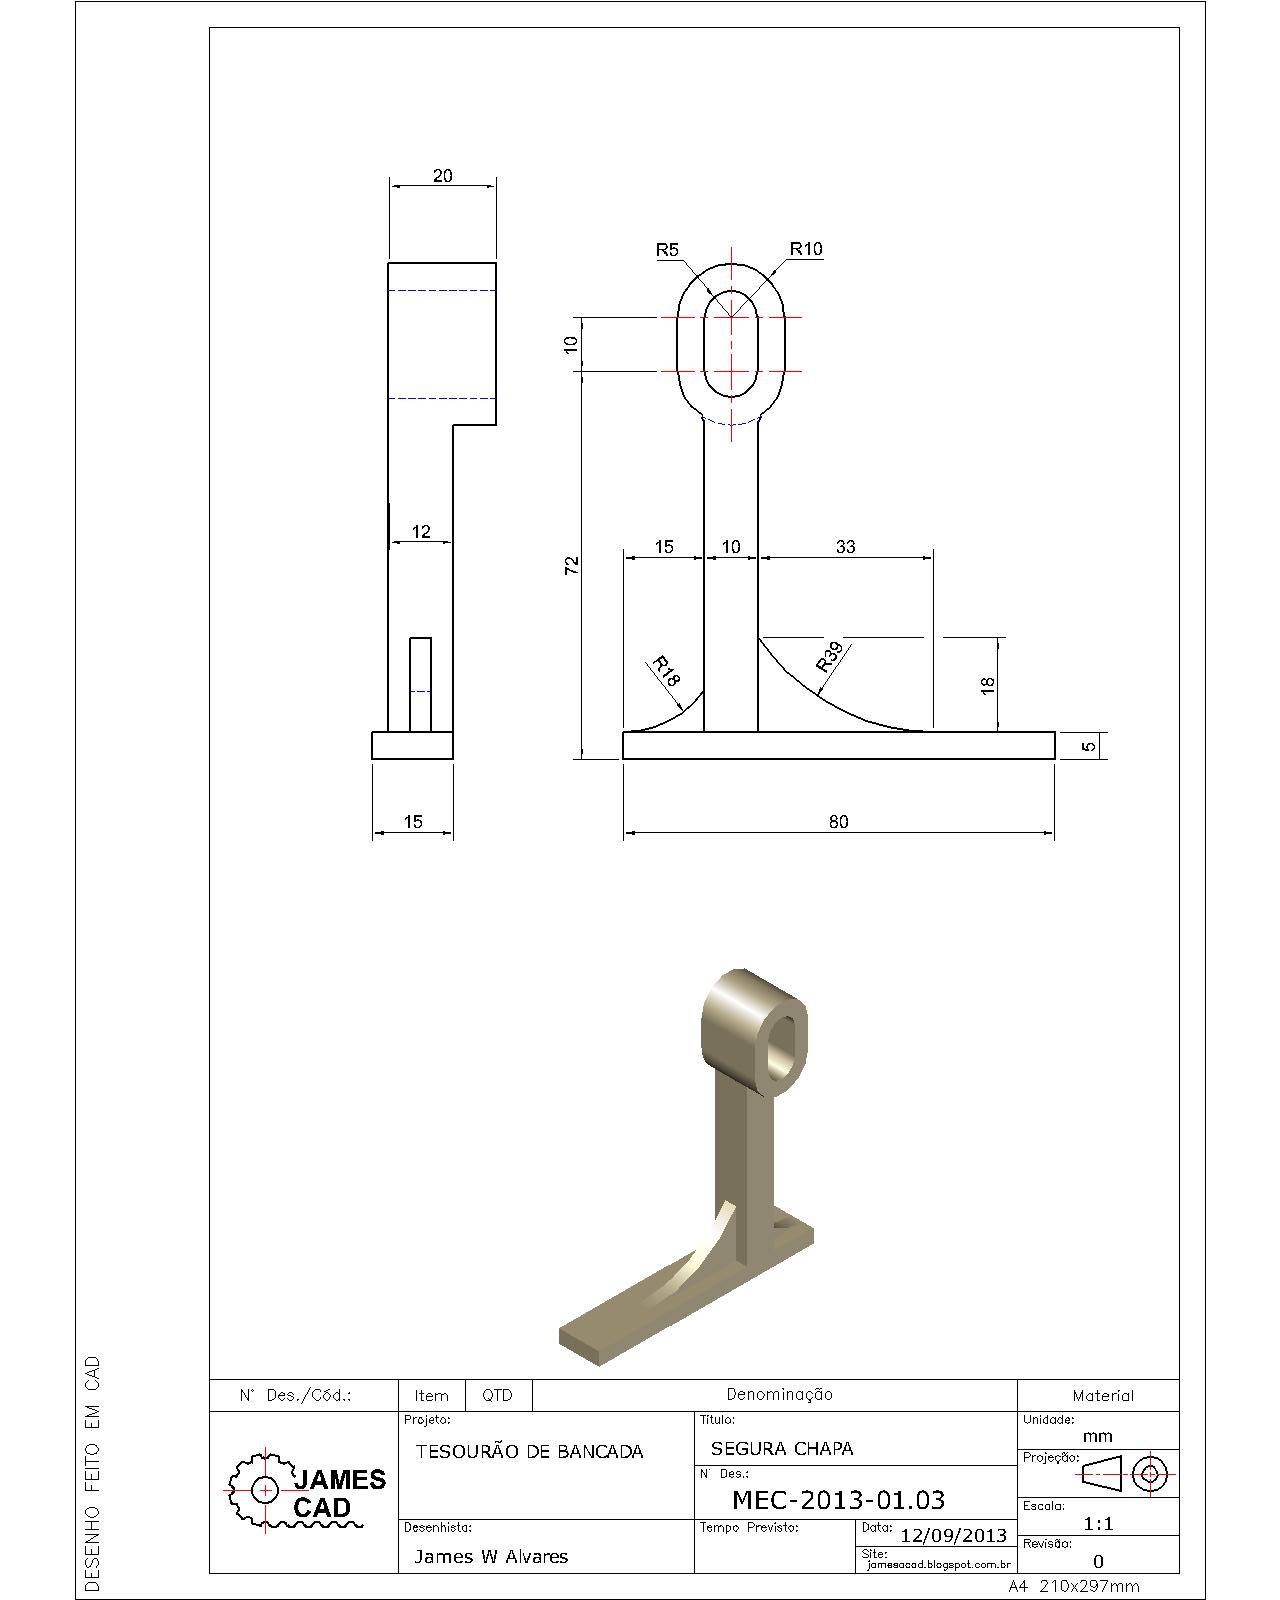 JamesCAD - desenhos mecânicos, civil, mobiliário, pré-moldados e